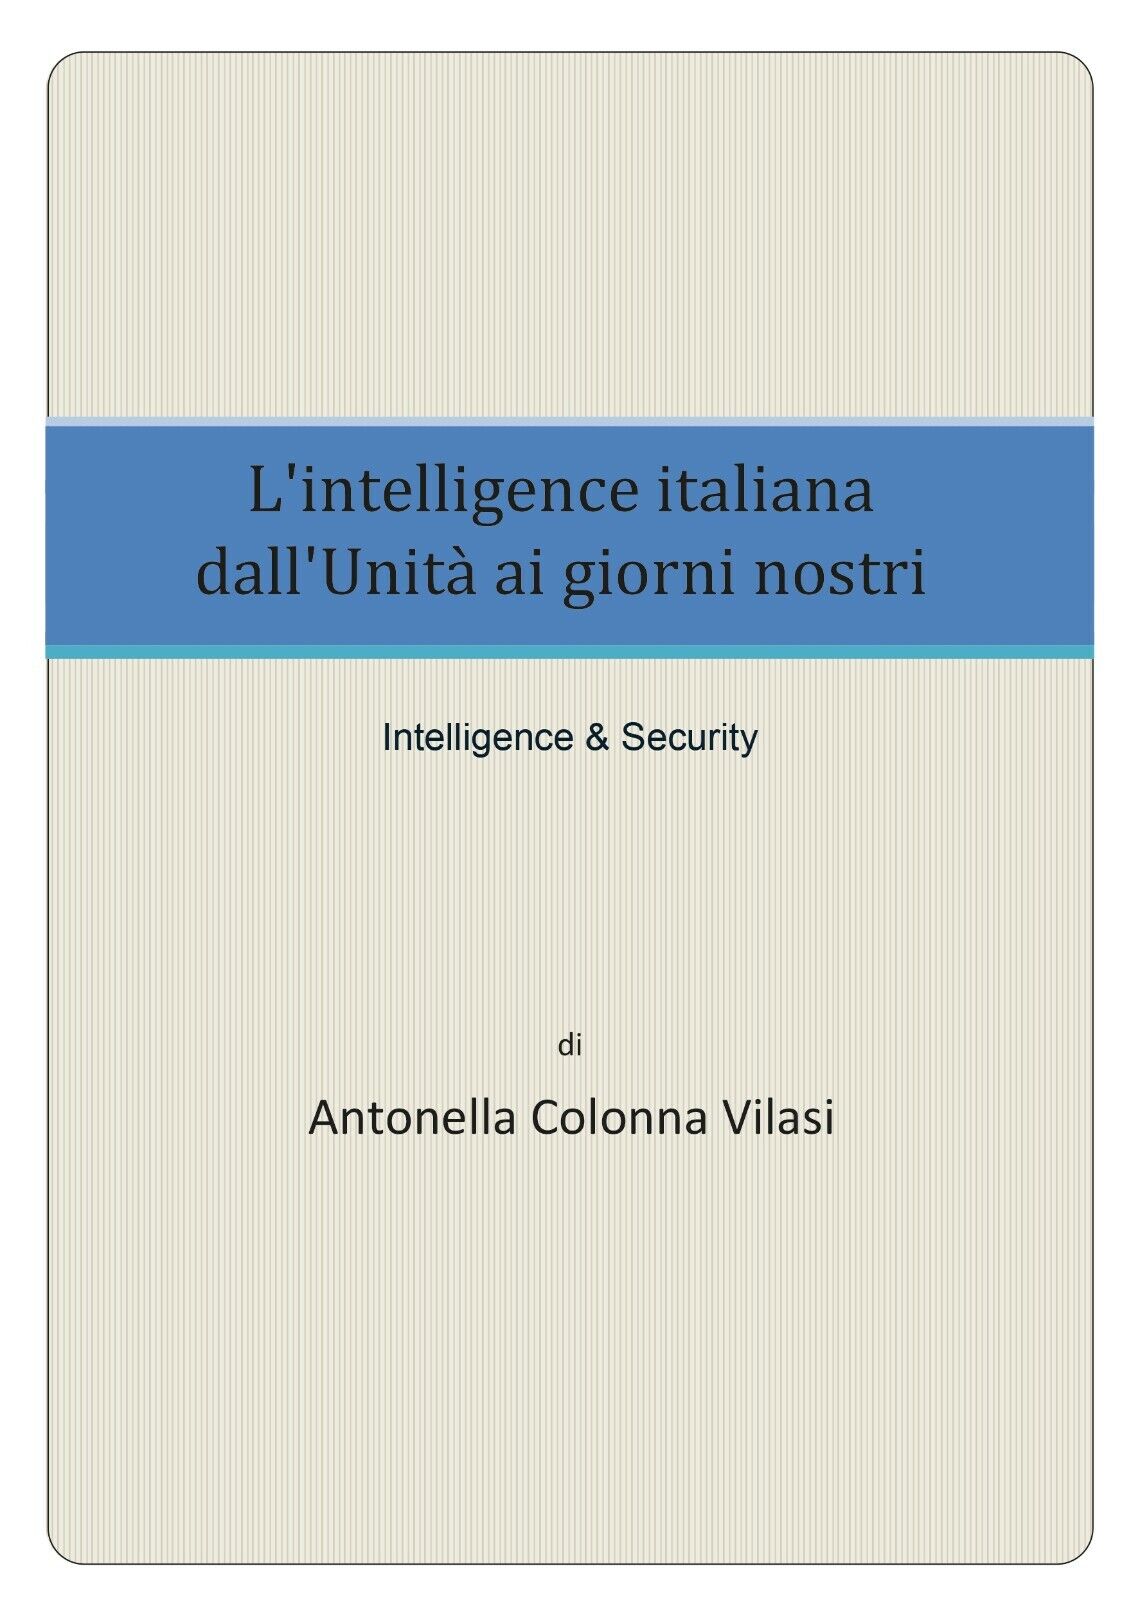 L'intelligence italiana dalL'Unit? ai giorni nostri - Antonella Colonna Vilasi, 